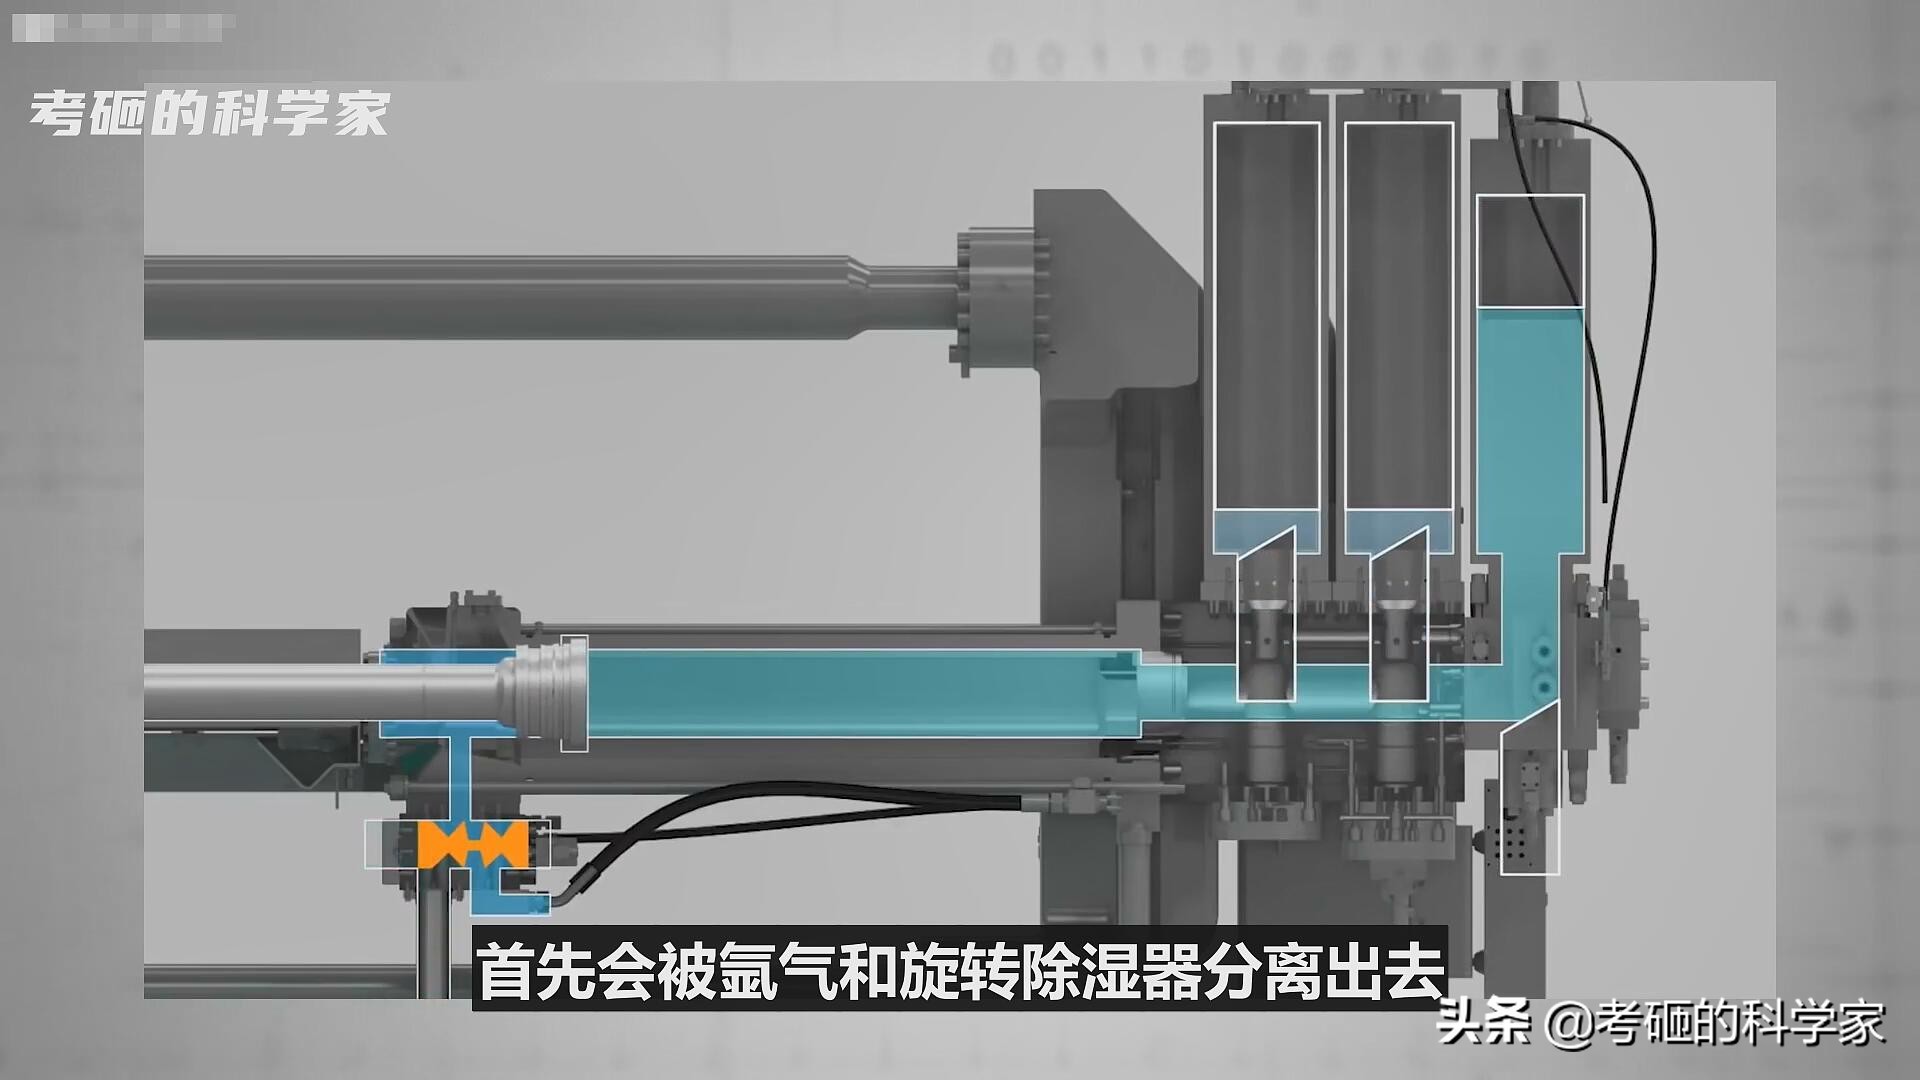 如你所见丨力劲6000吨智能压铸单元在韩国GLOVITECH越南工厂正式上线生产 - 知乎